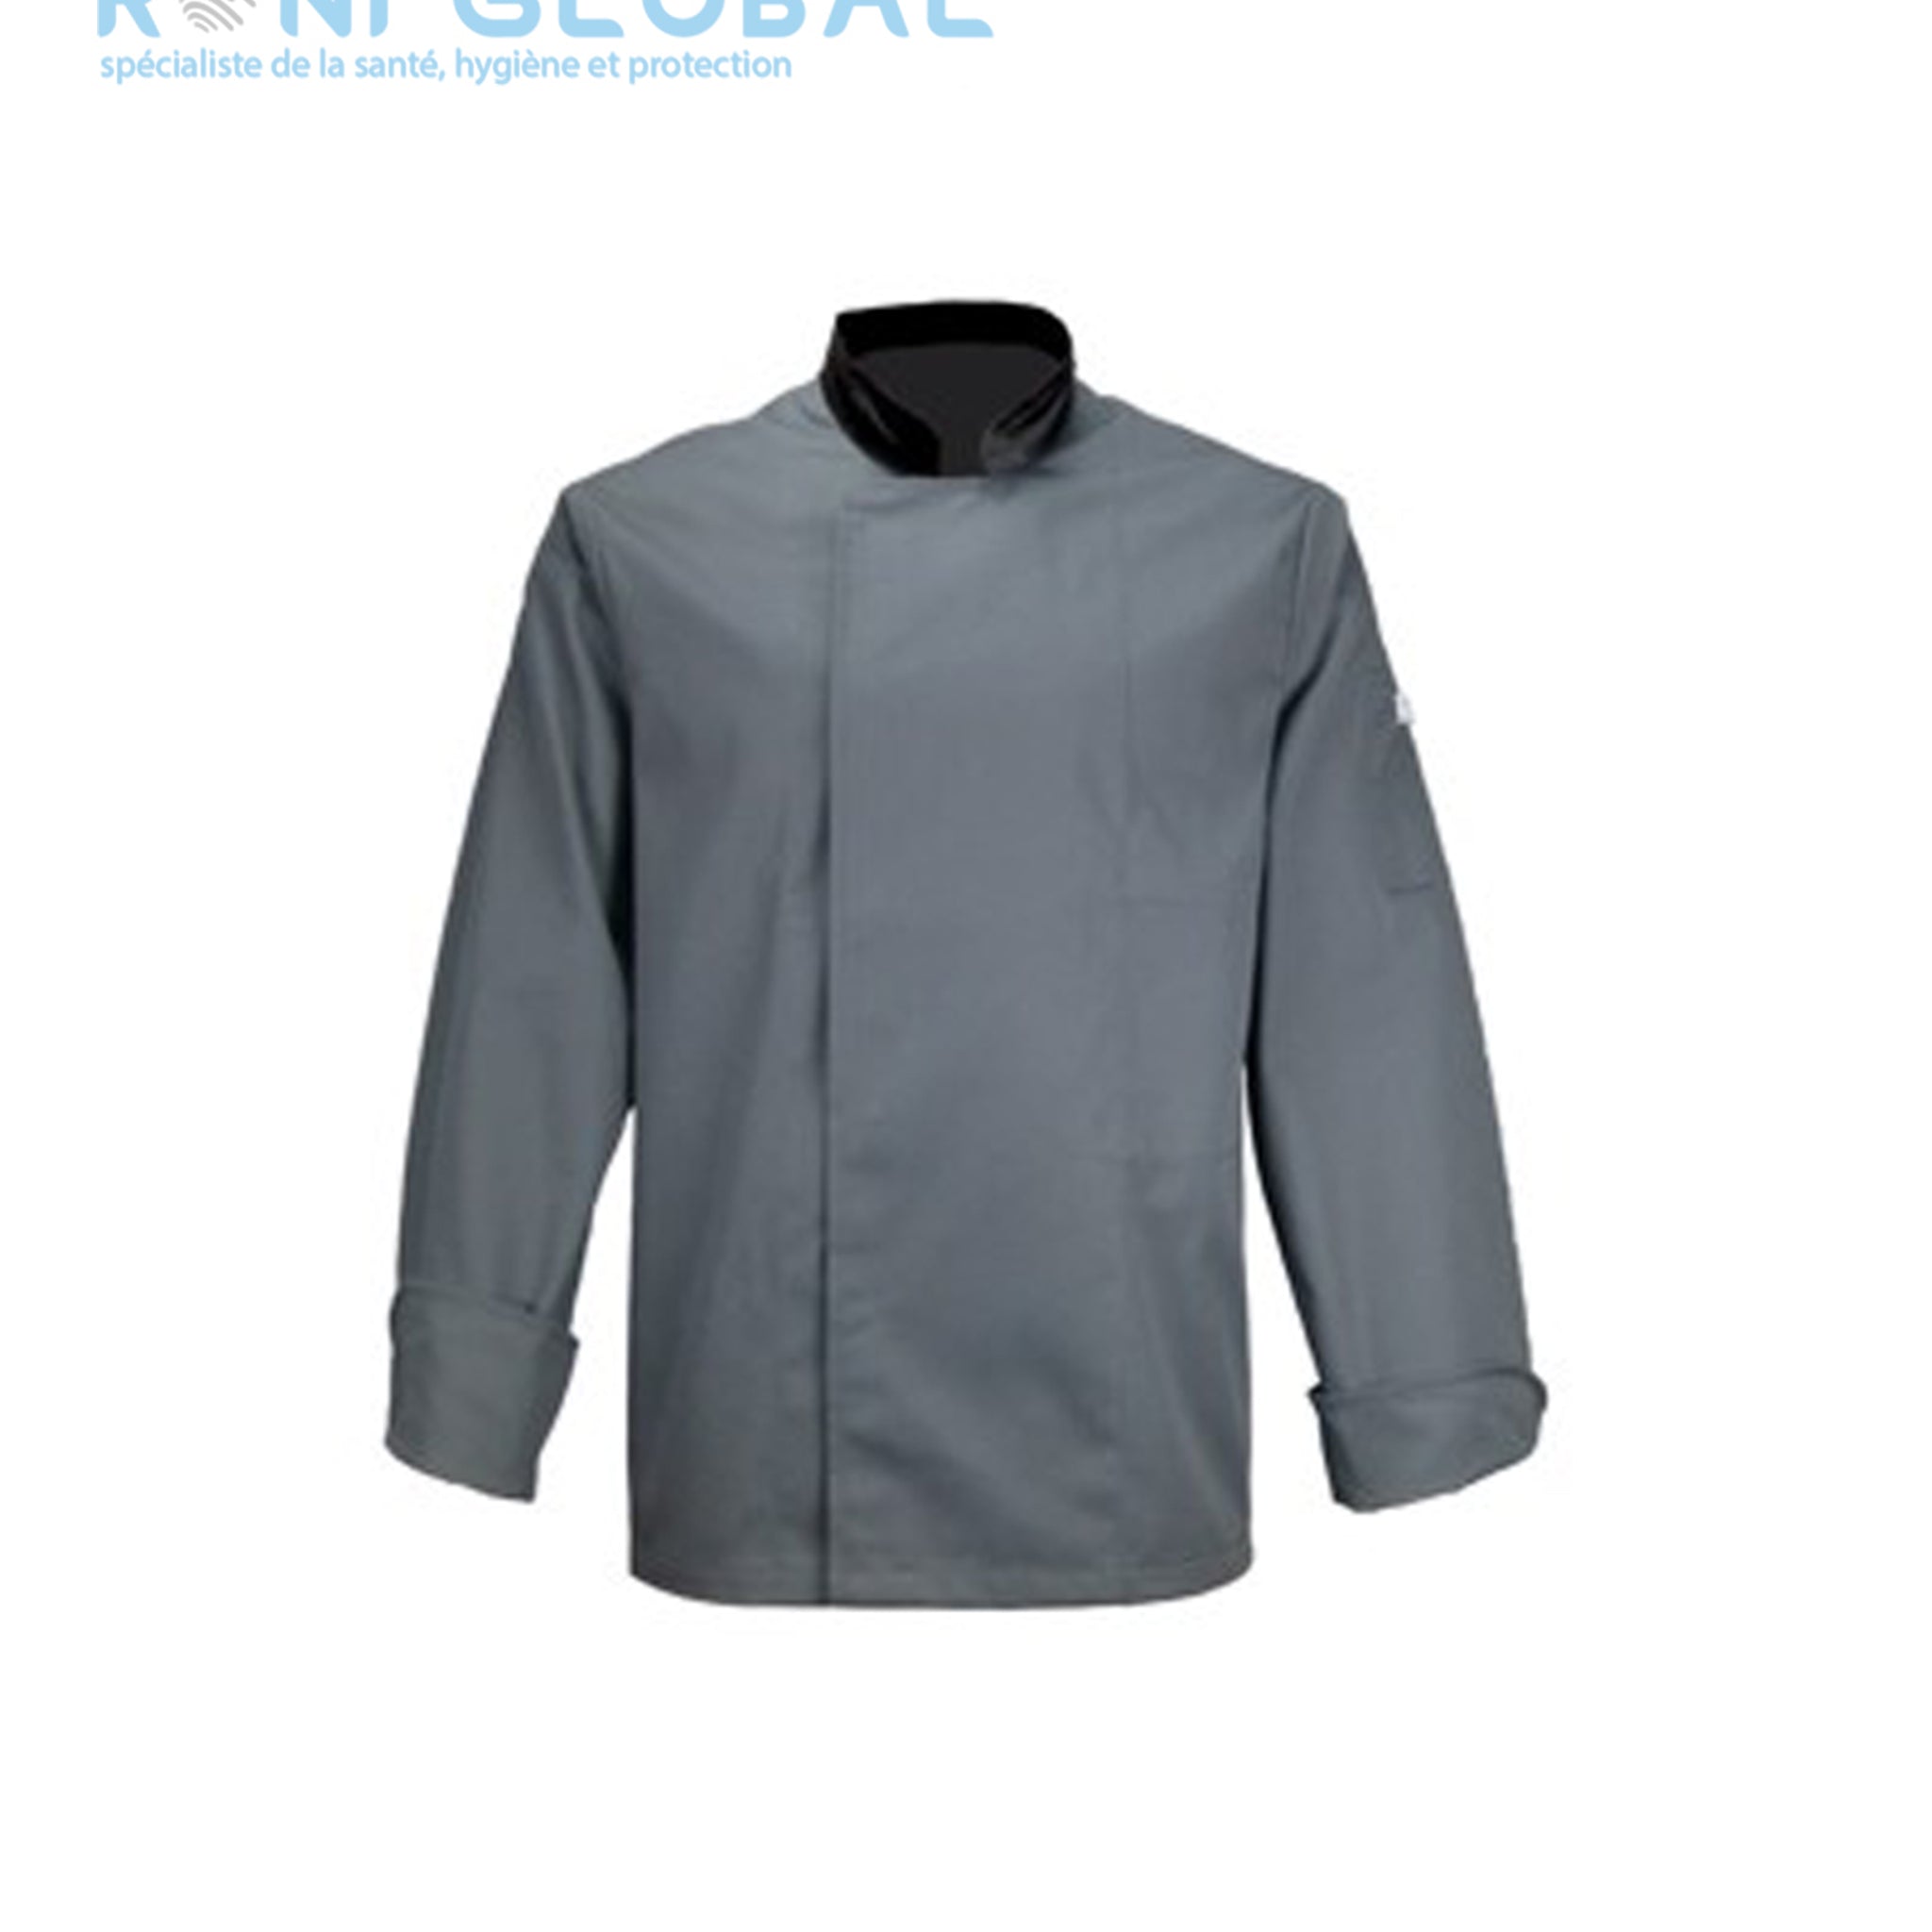 Veste de cuisine grise manches longues, en coton/polyester 2 poches - VESTE CUISINE ML PC GRIS PBV